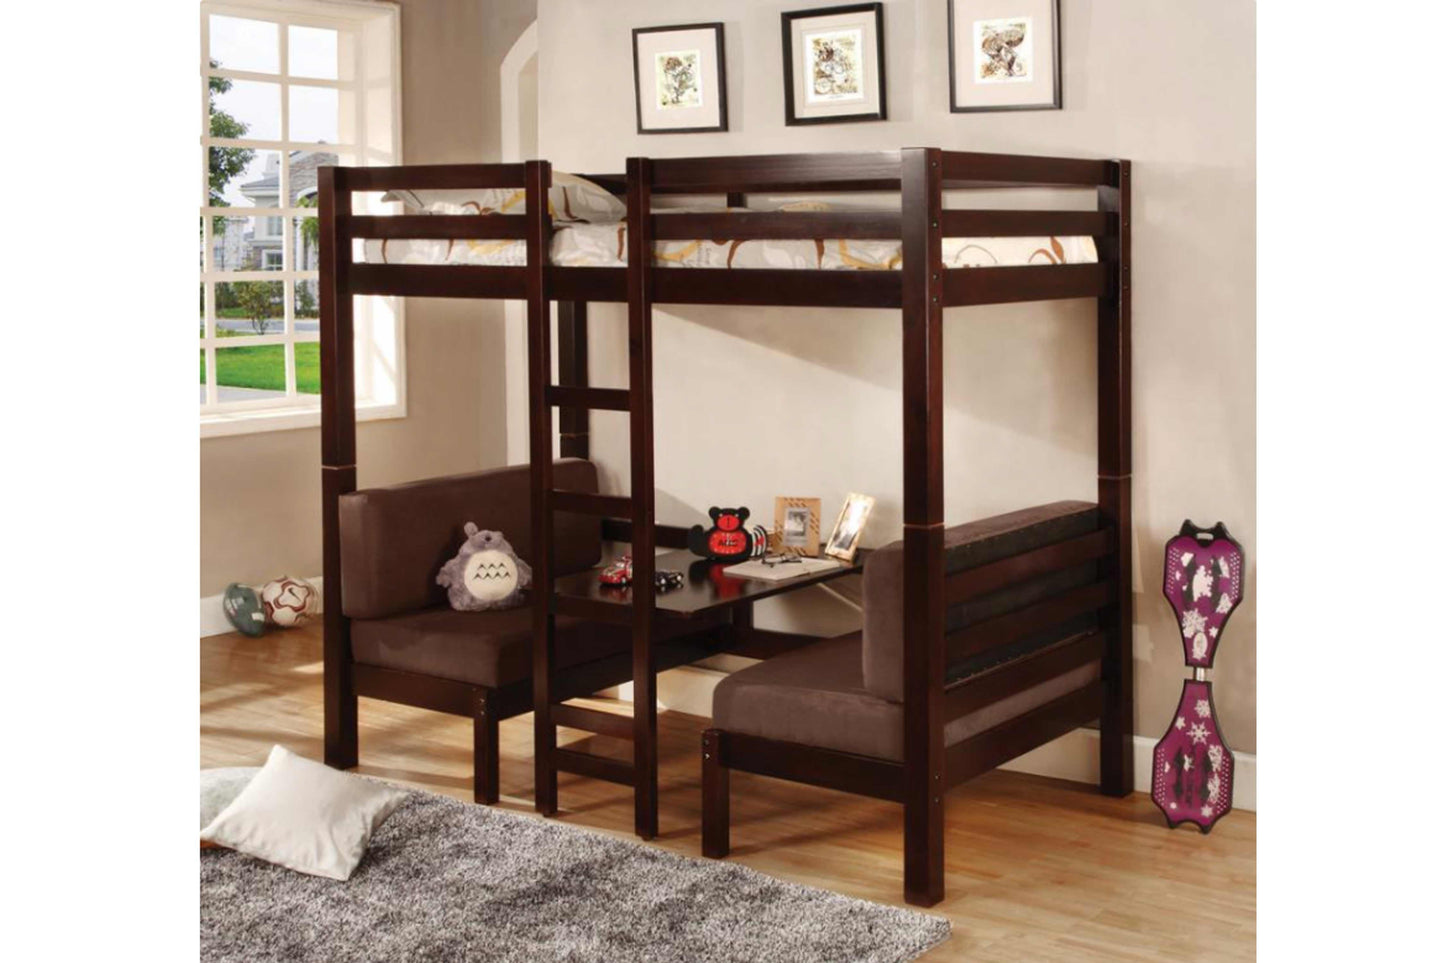 TWIN / TWIN BUNK BED #18460263 - Venini Furniture 